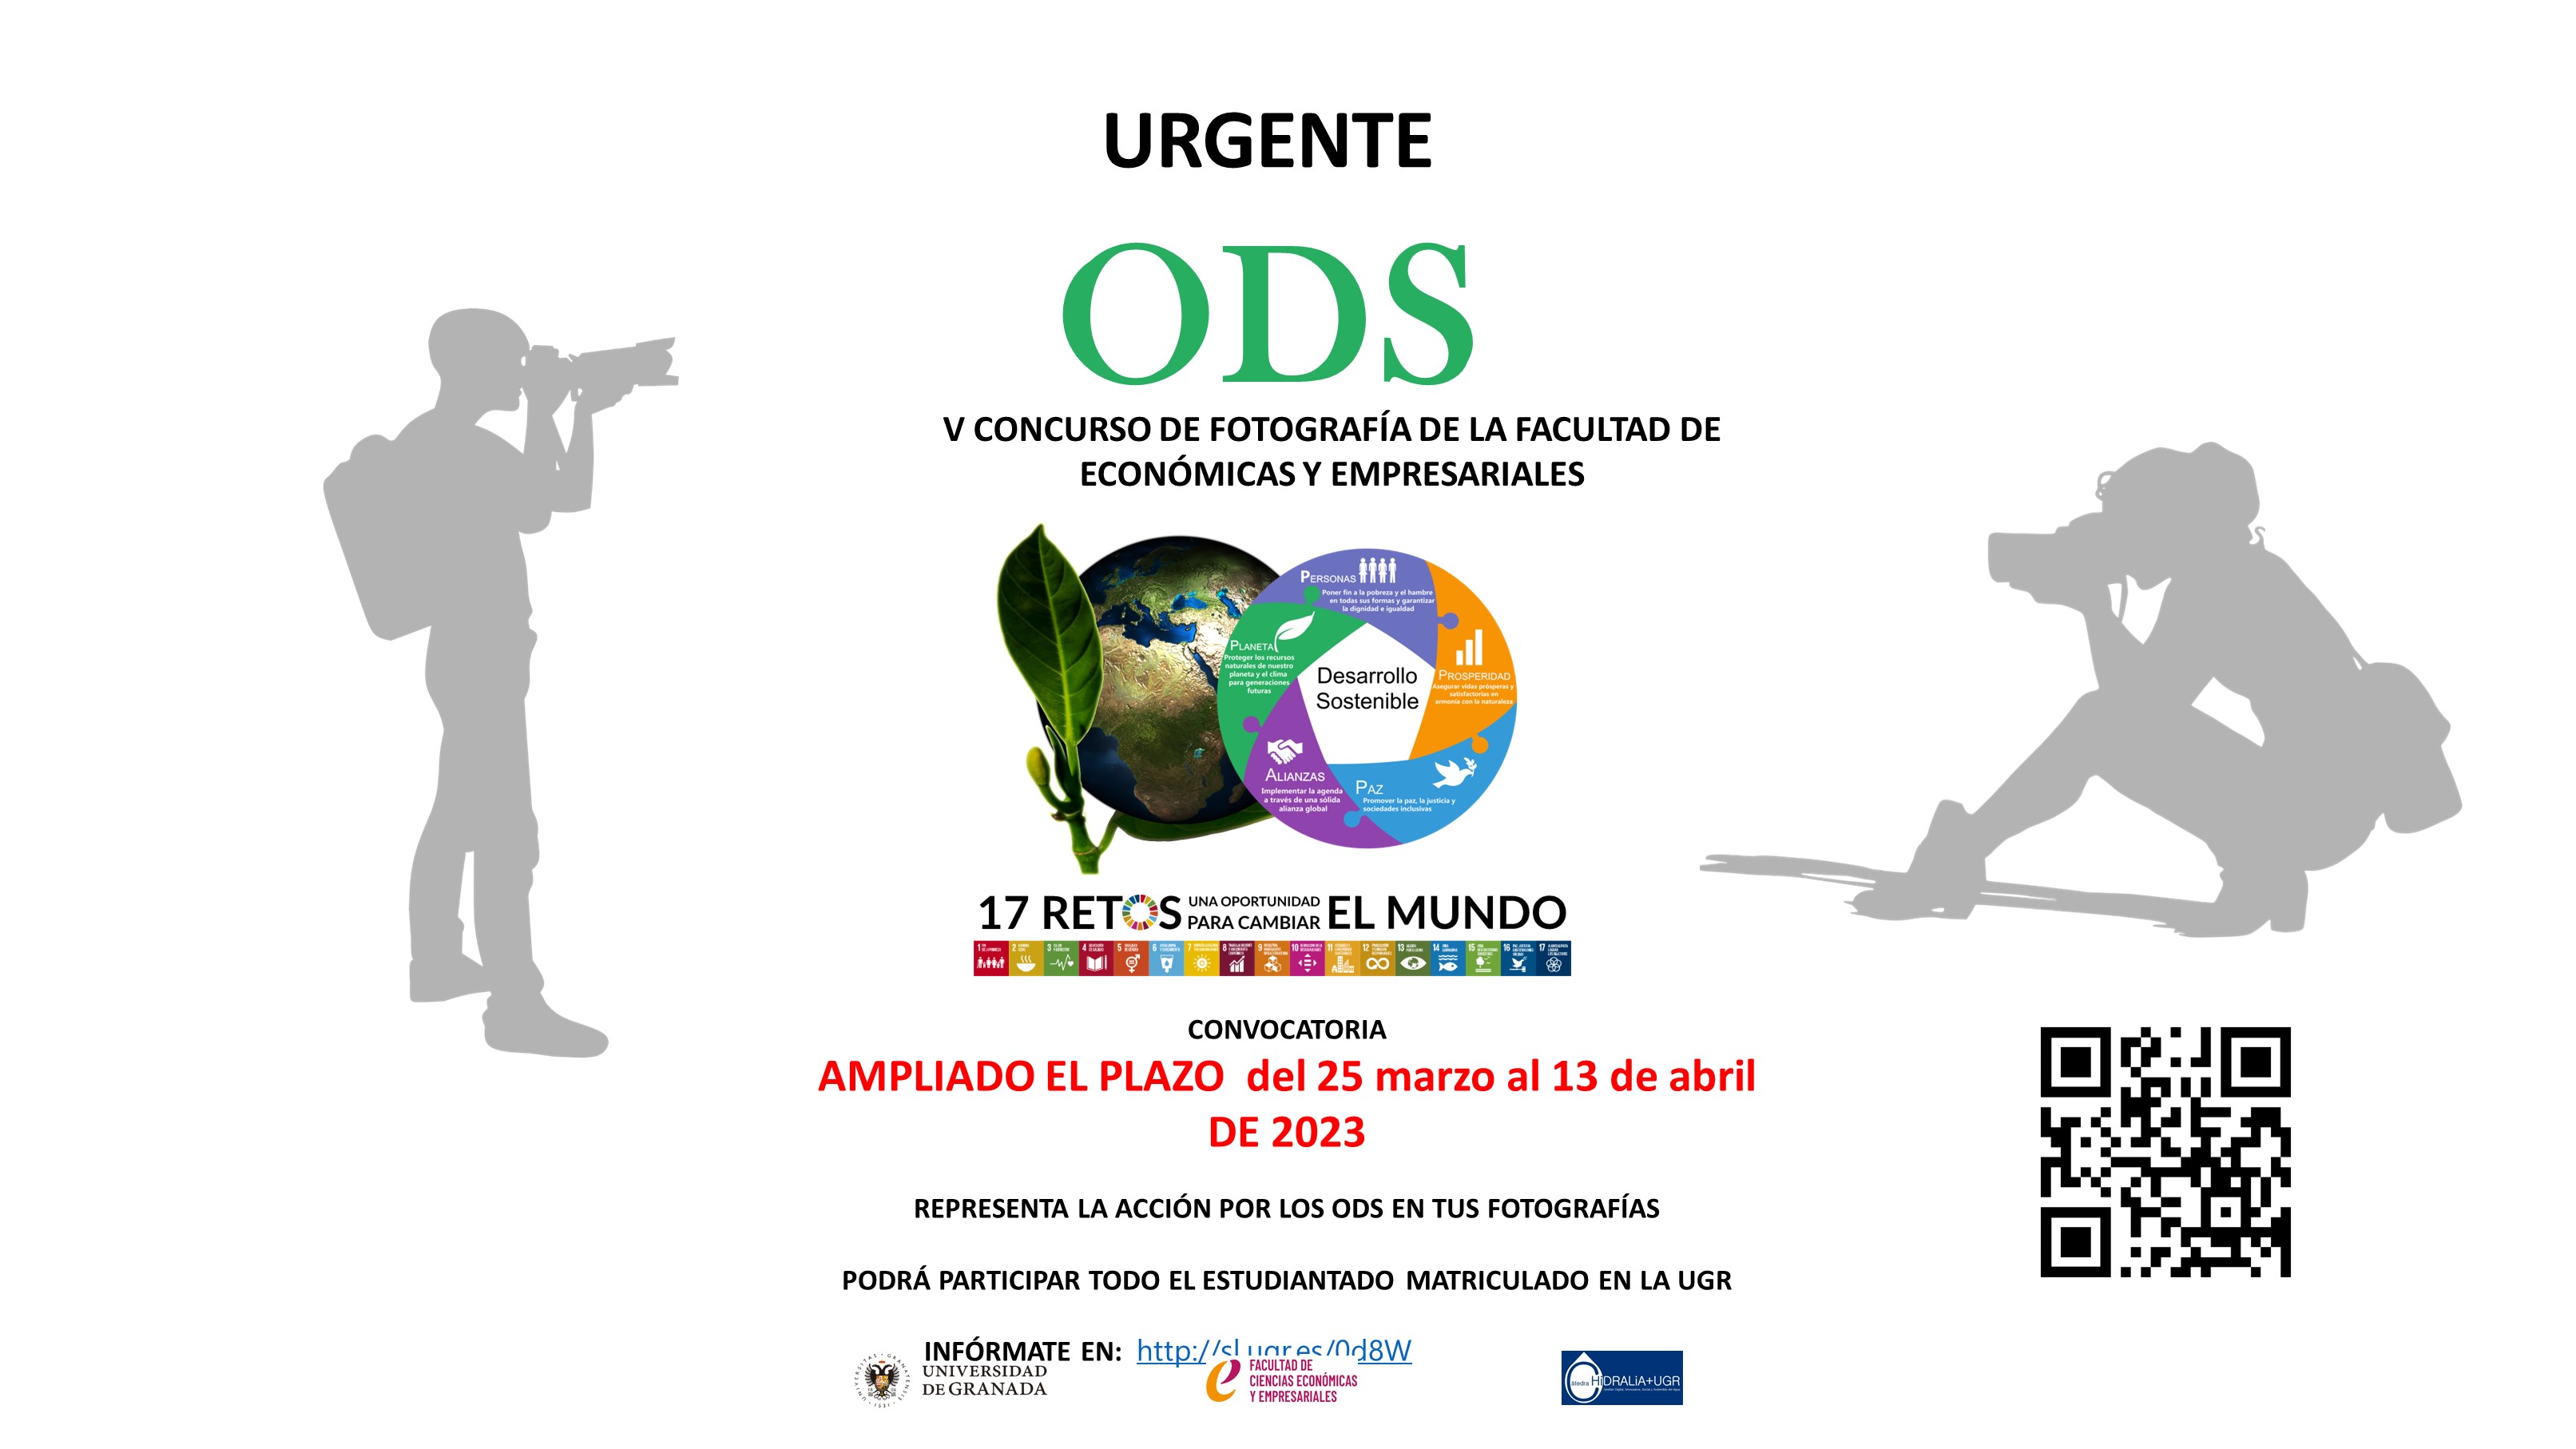 Ampliación del plazo del V Concurso de Fotografía "Urgente: ODS"